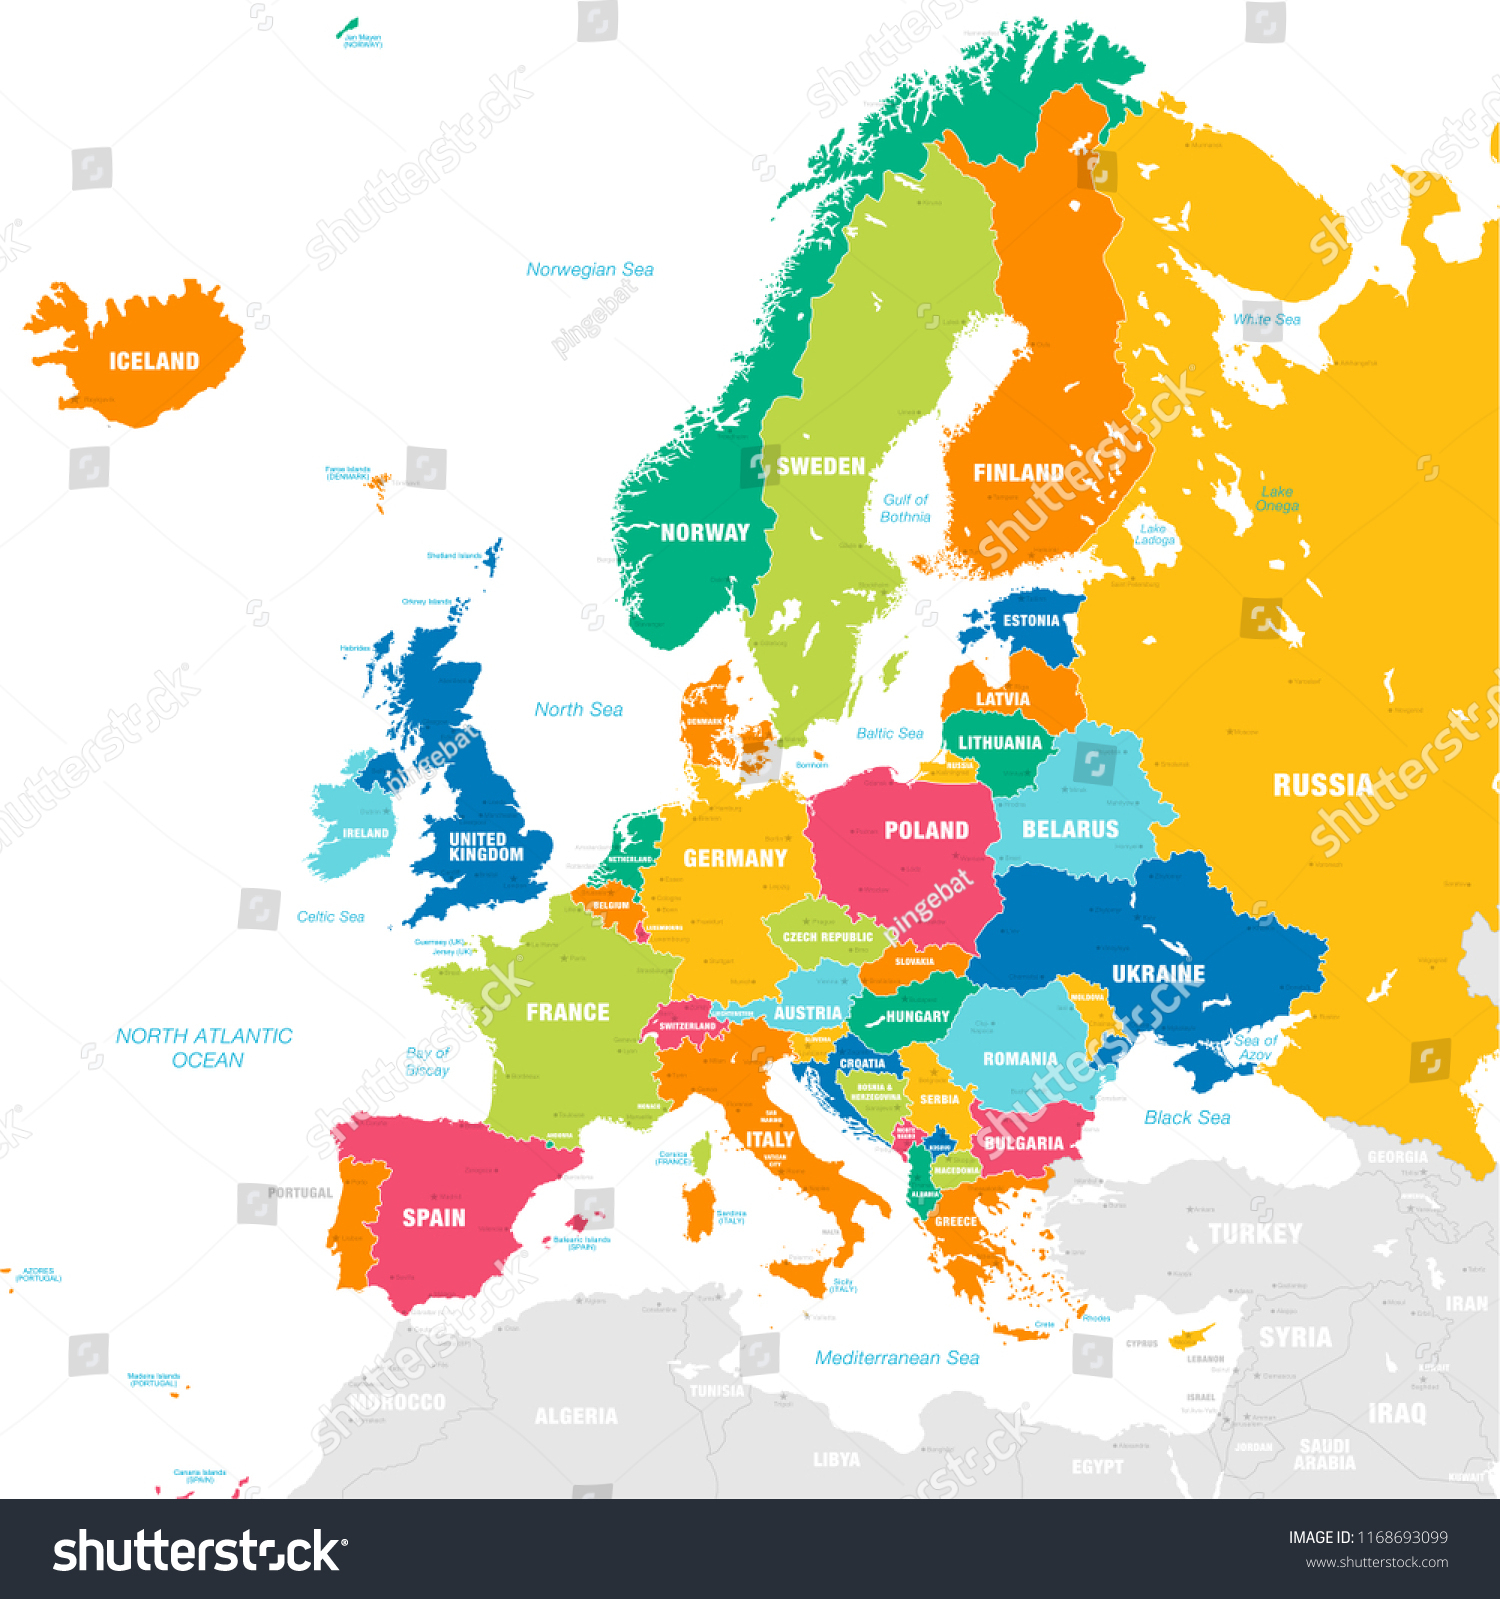 Image Vectorielle De Stock De Image Vectorielle Carte Du tout Carte De L Europe Avec Capitales